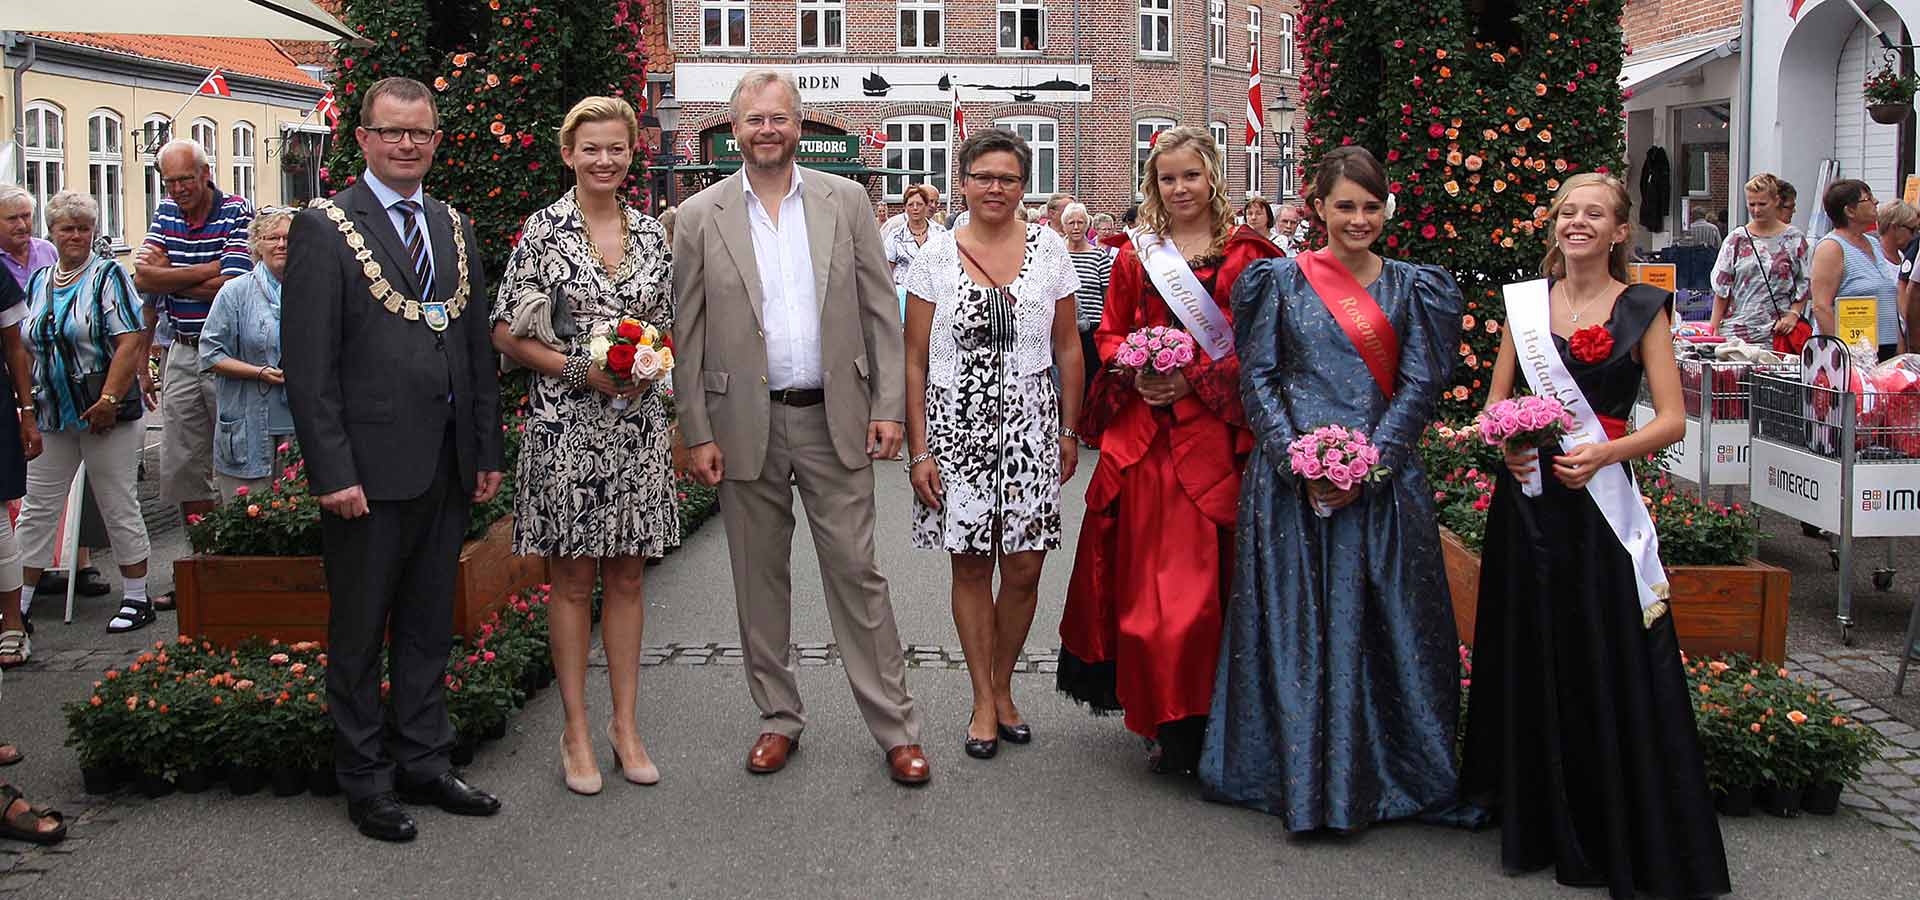 Greveparret Ahlefeldt fra Egeskov Slot sammen med rosenprinsesserne